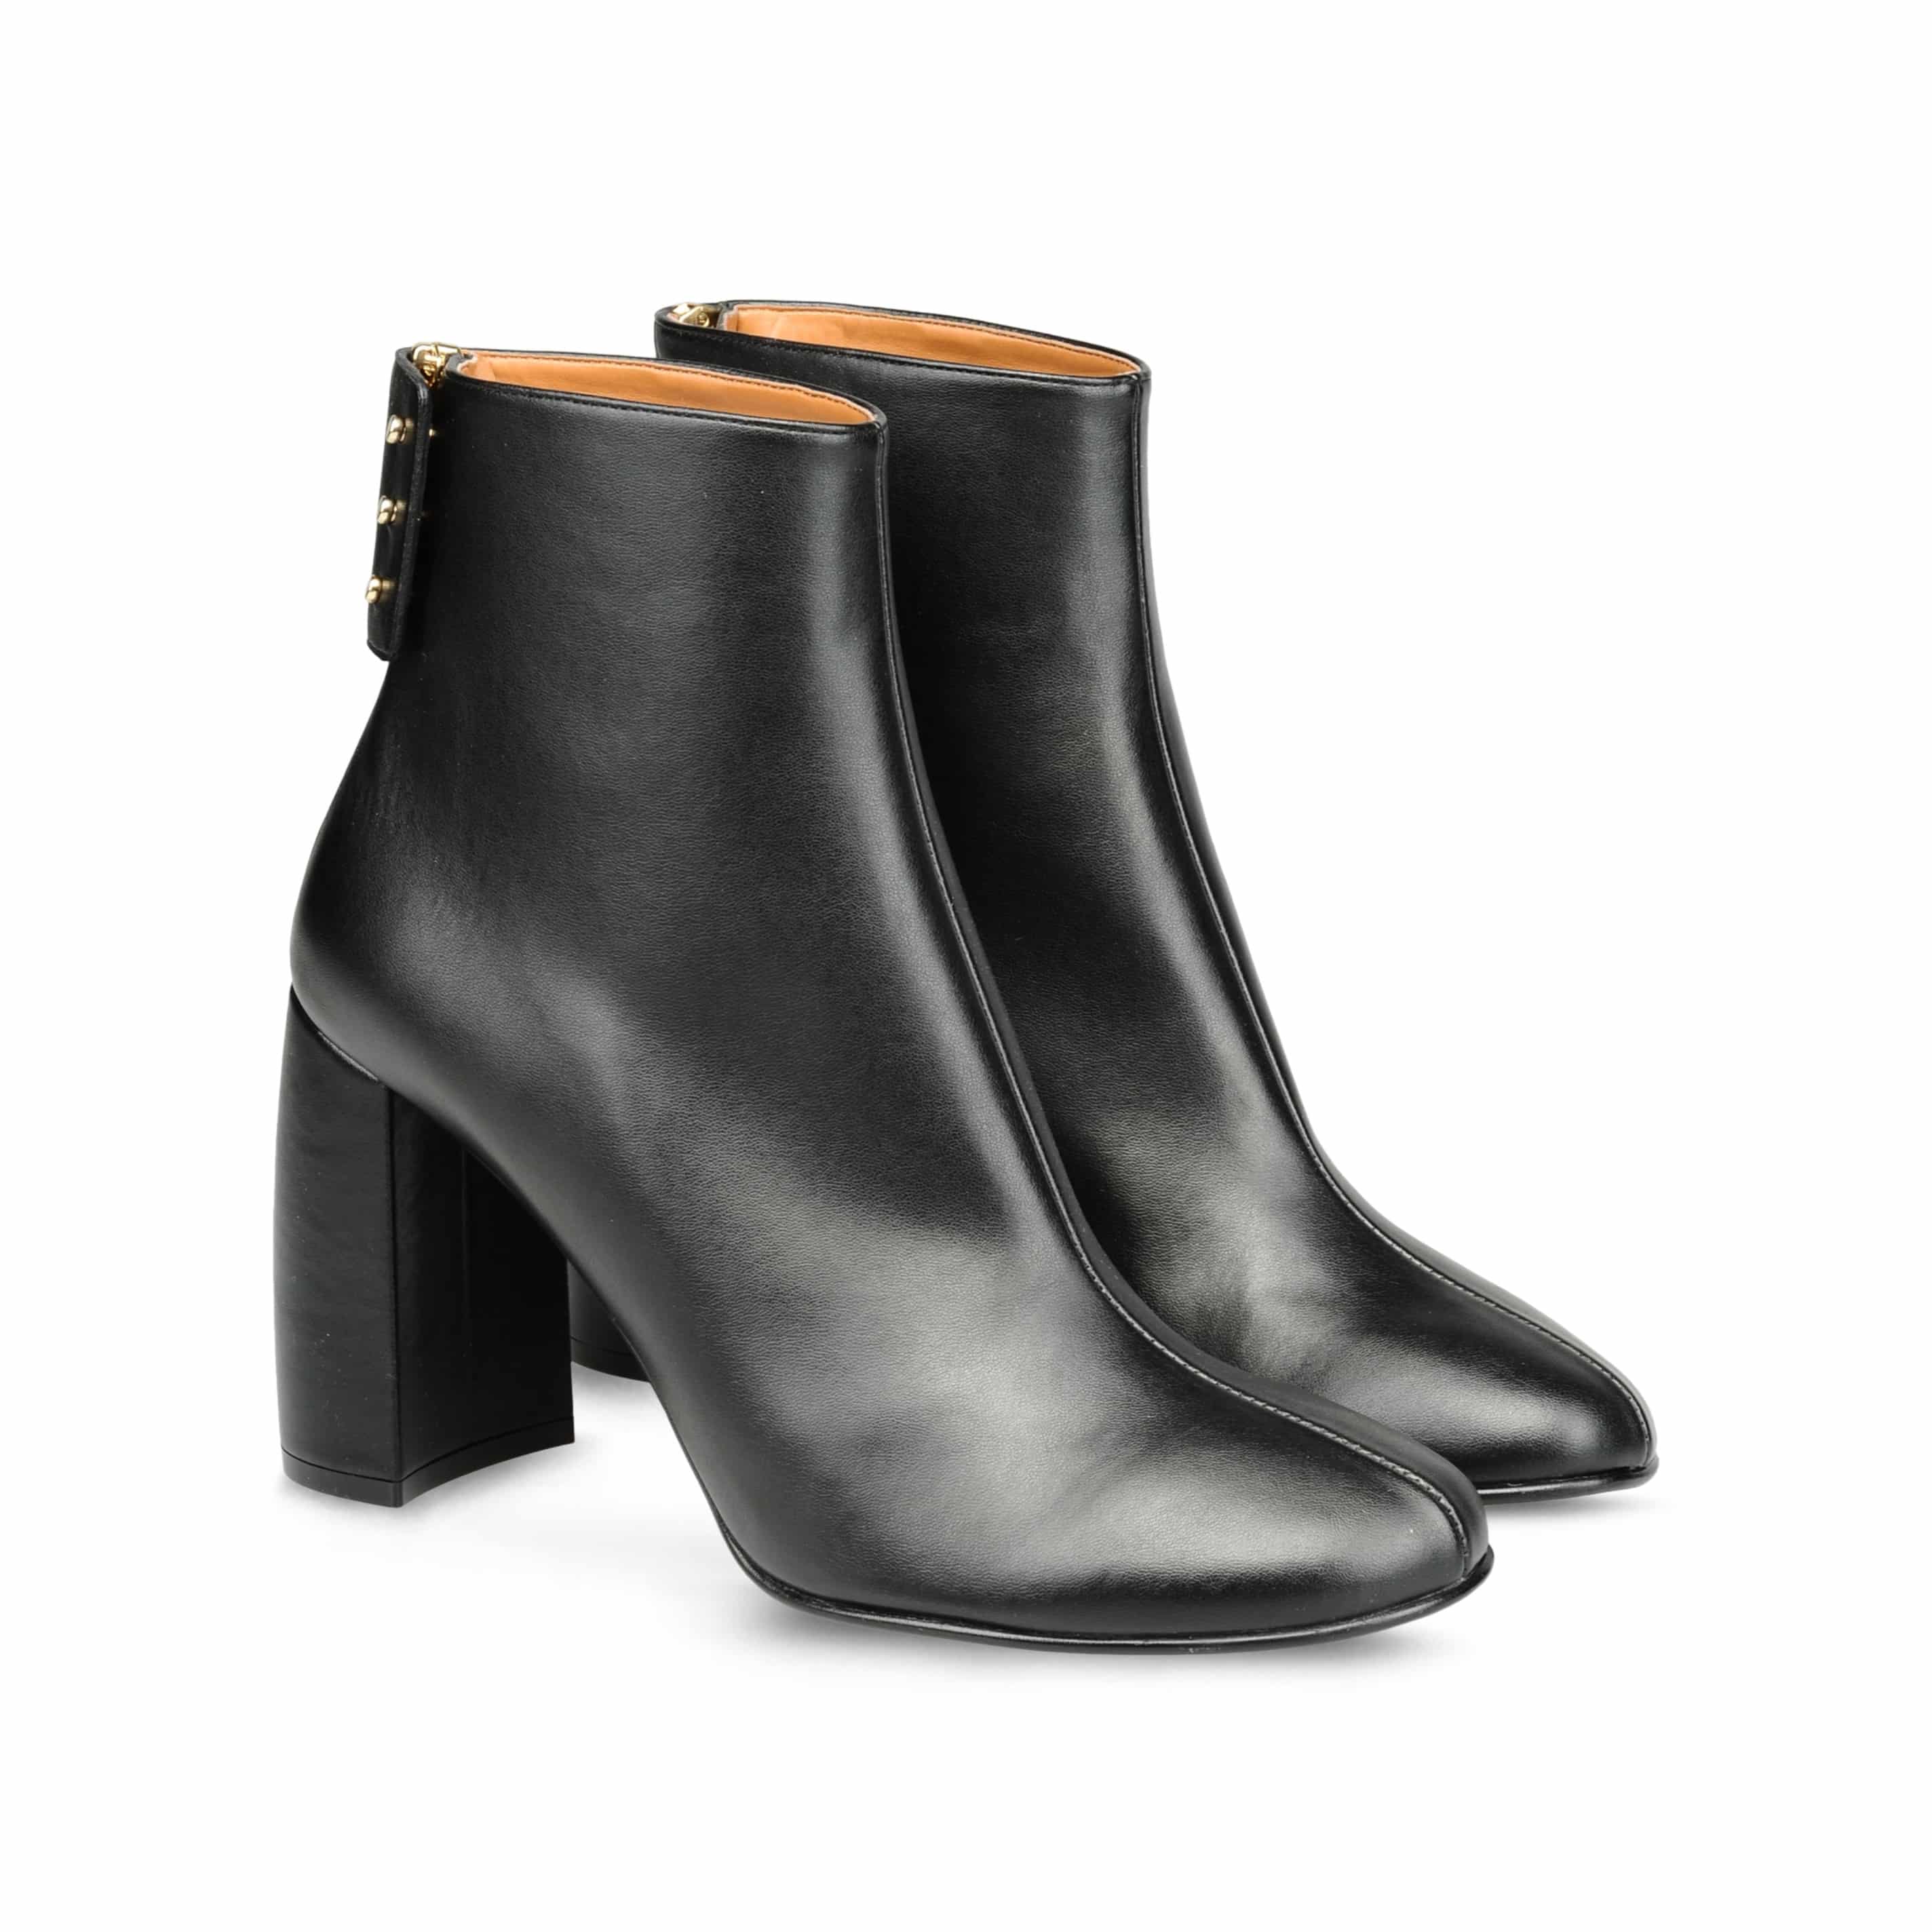 13_Ankle Boots Stella McCartney, tacco a forma di mezzo cilindro e chiusura con zip e bottoni con patta (620 € sullo store online)